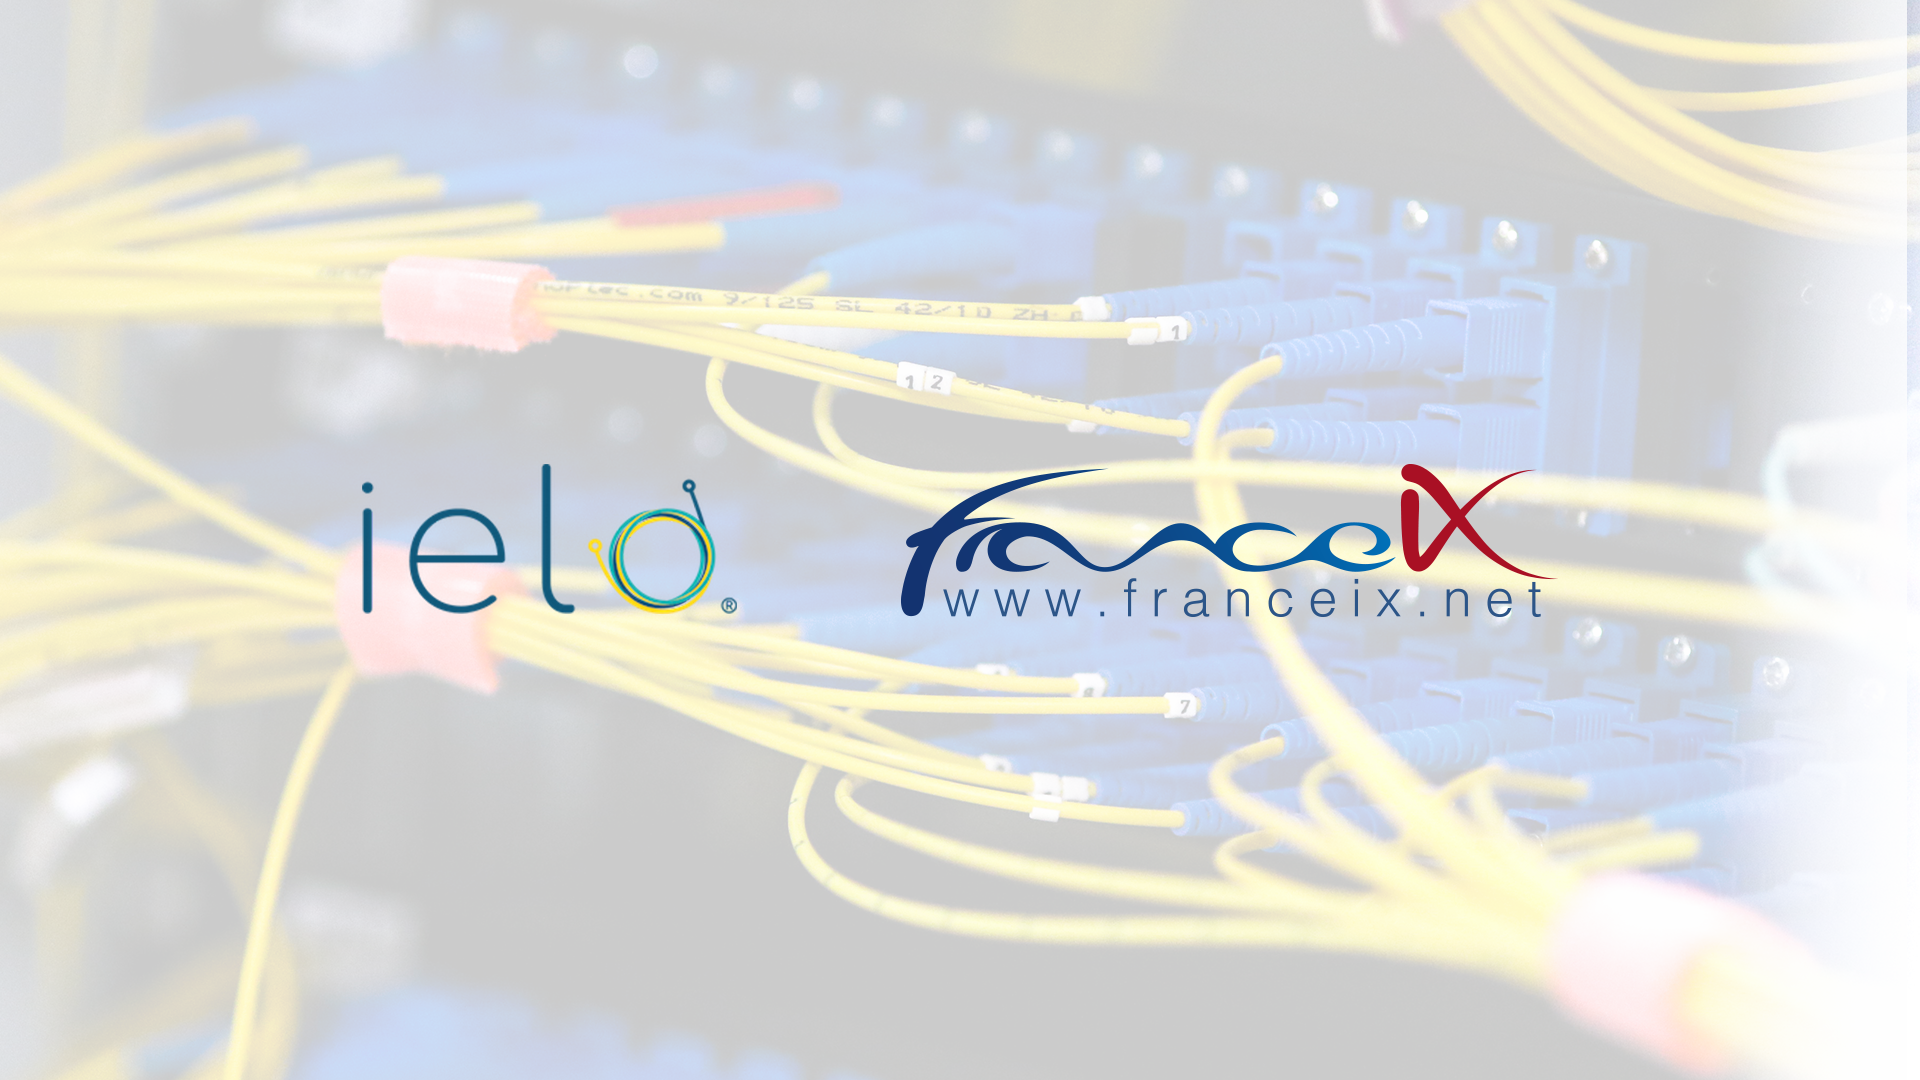 
France-IX fait appel à IELO pour le renouvellement partiel de son réseau fibre optique support de sa plateforme d’échange 
